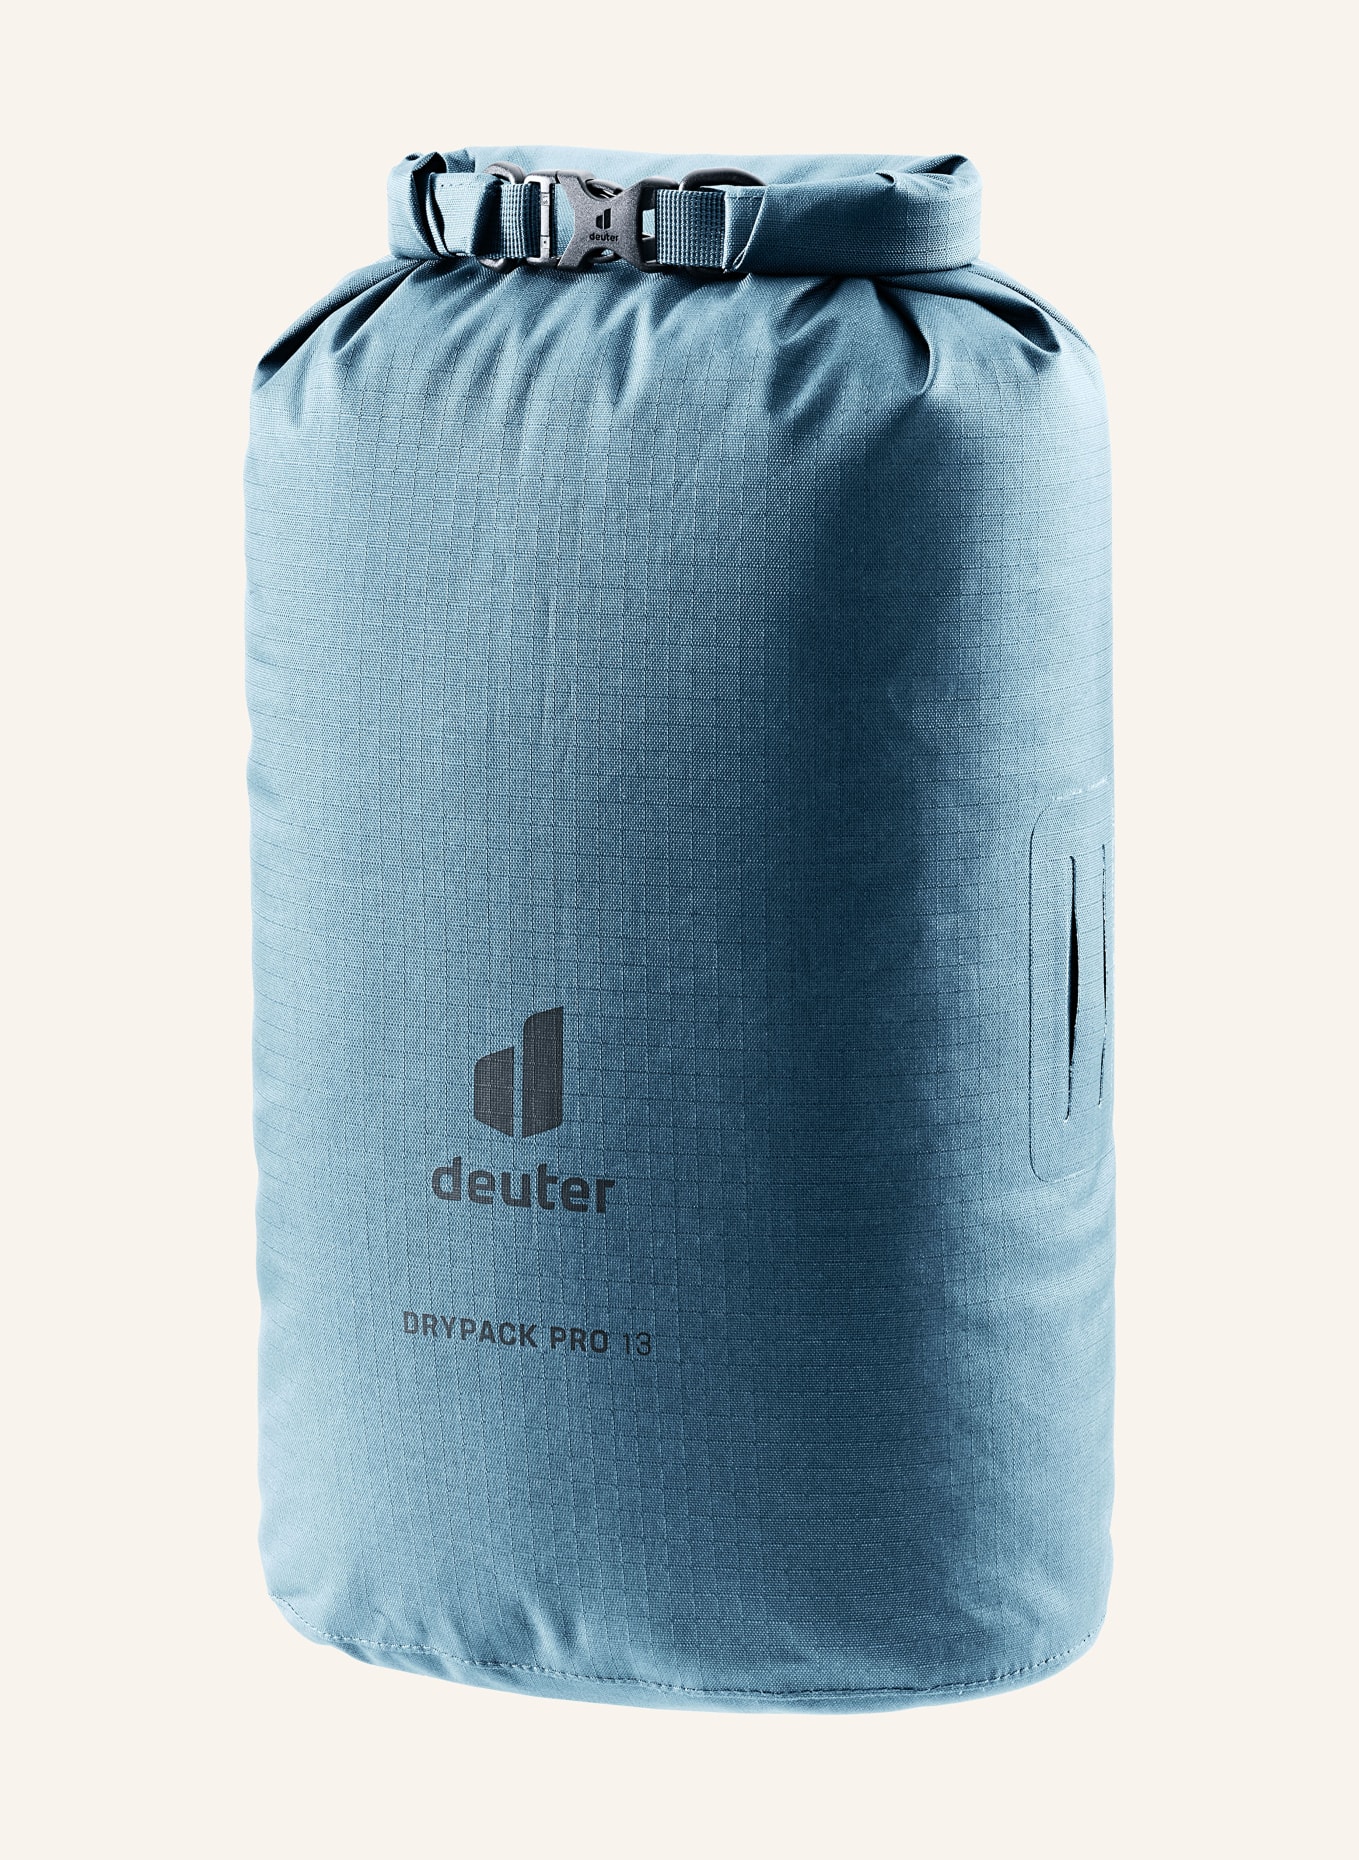 deuter Packing bag DRYPACK PRO 13 10 l, Color: BLUE (Image 1)